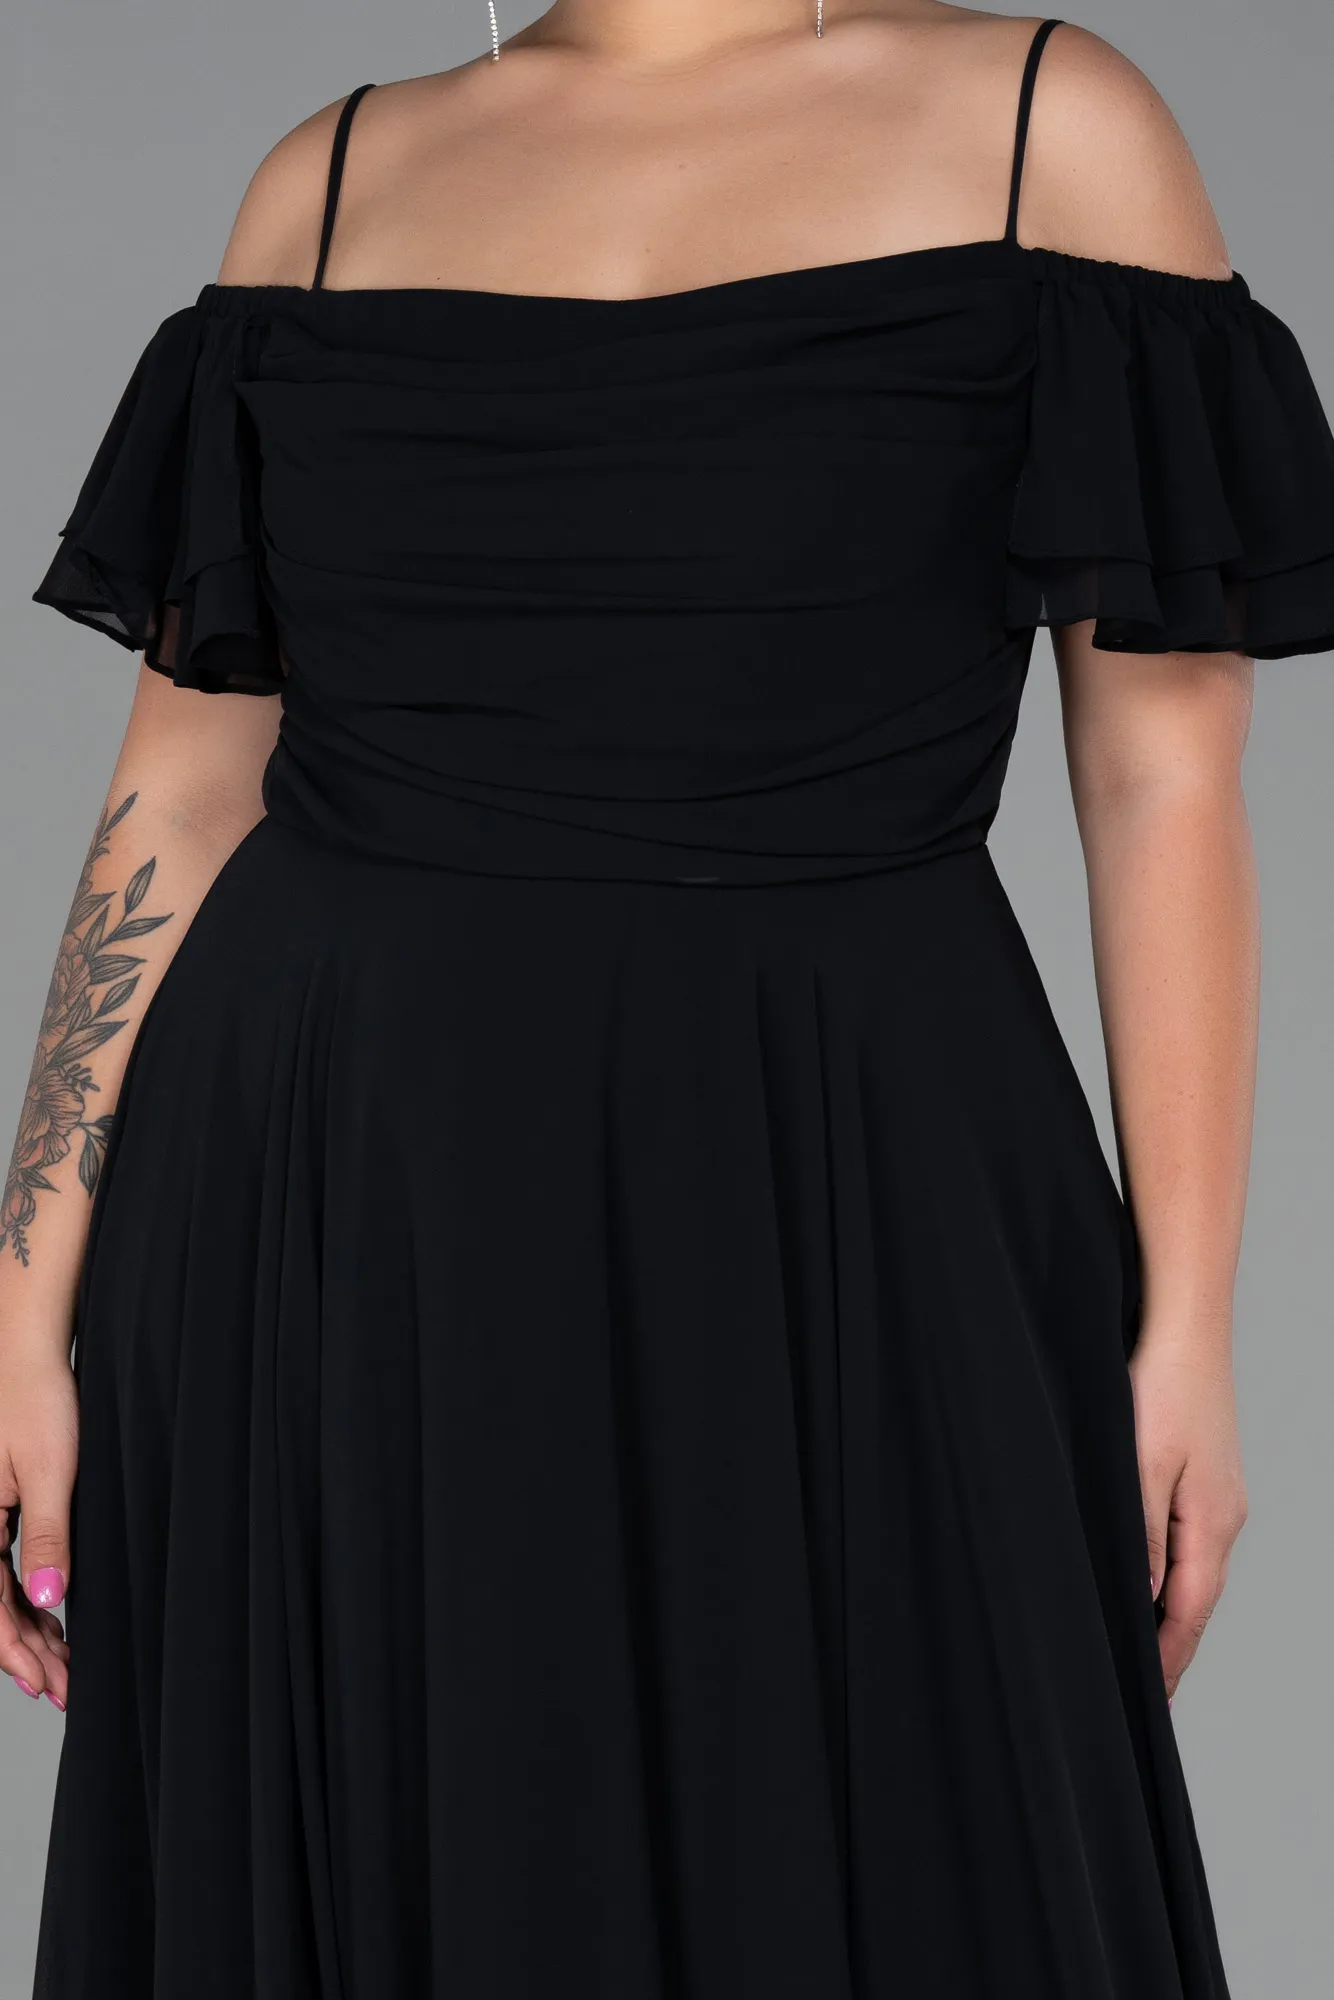 Black-Long Chiffon Plus Size Evening Dress ABU3259